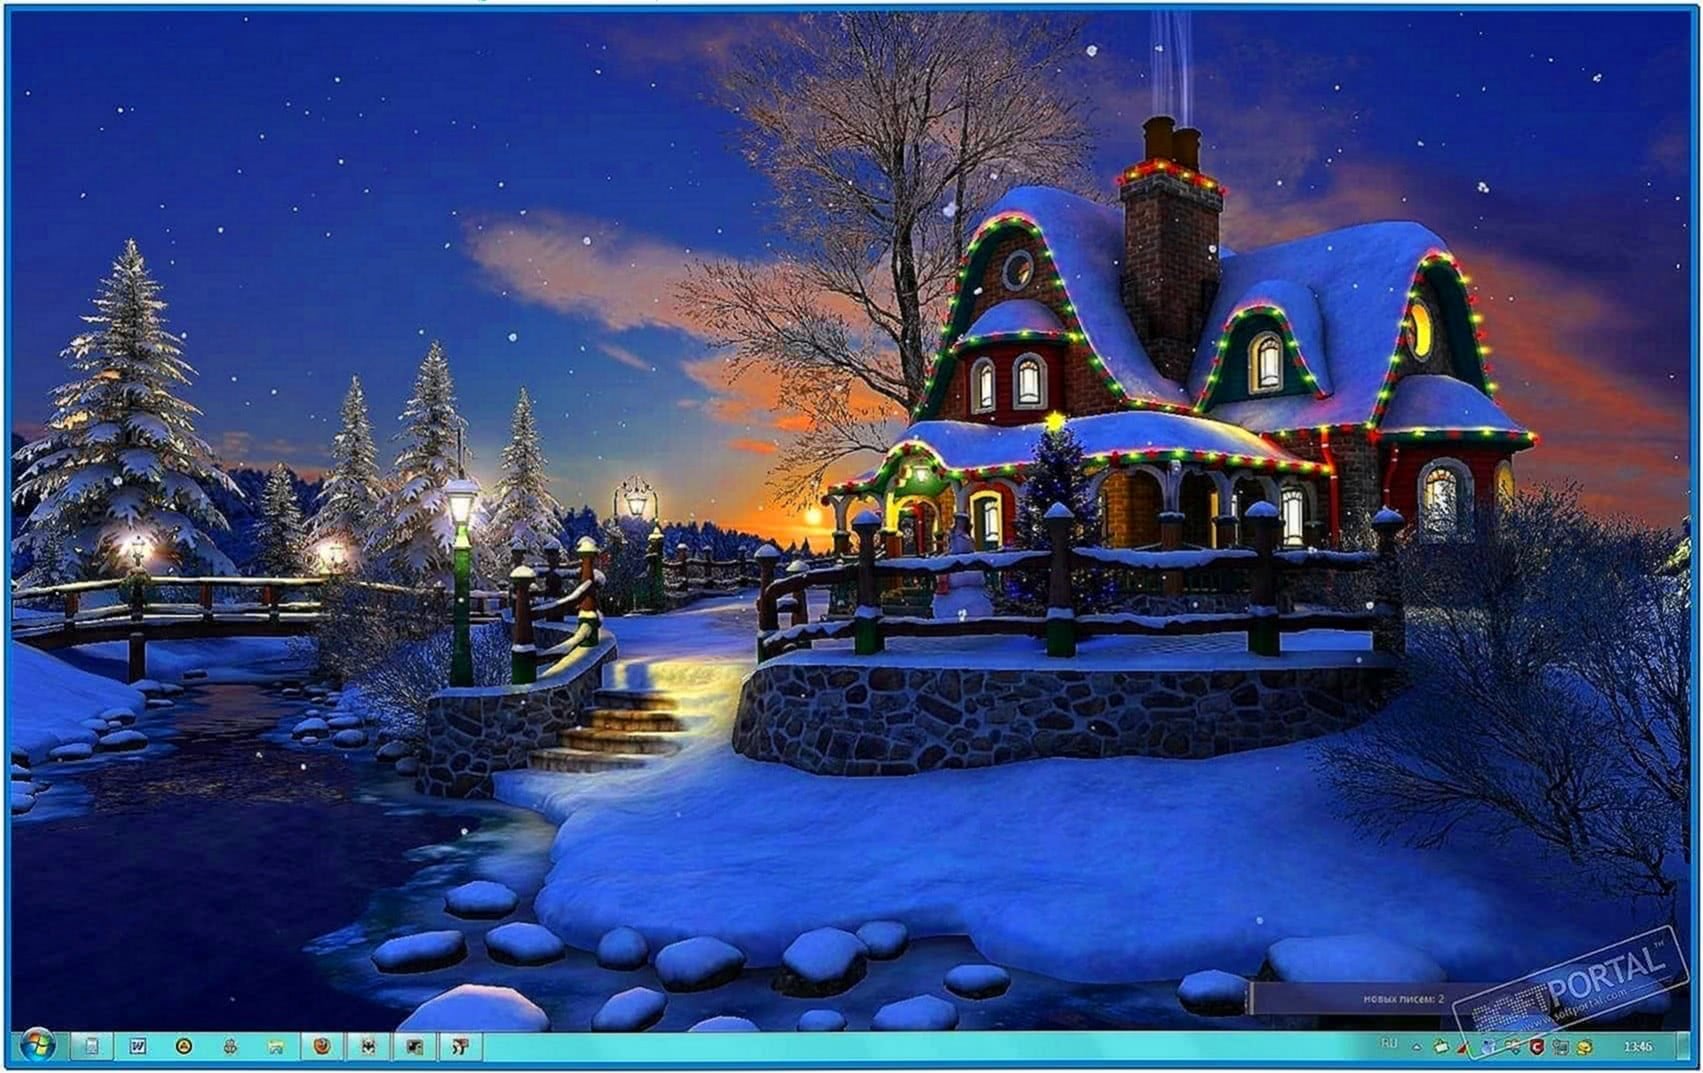 1703x1073px 3D Animated Christmas Wallpapers - WallpaperSafari